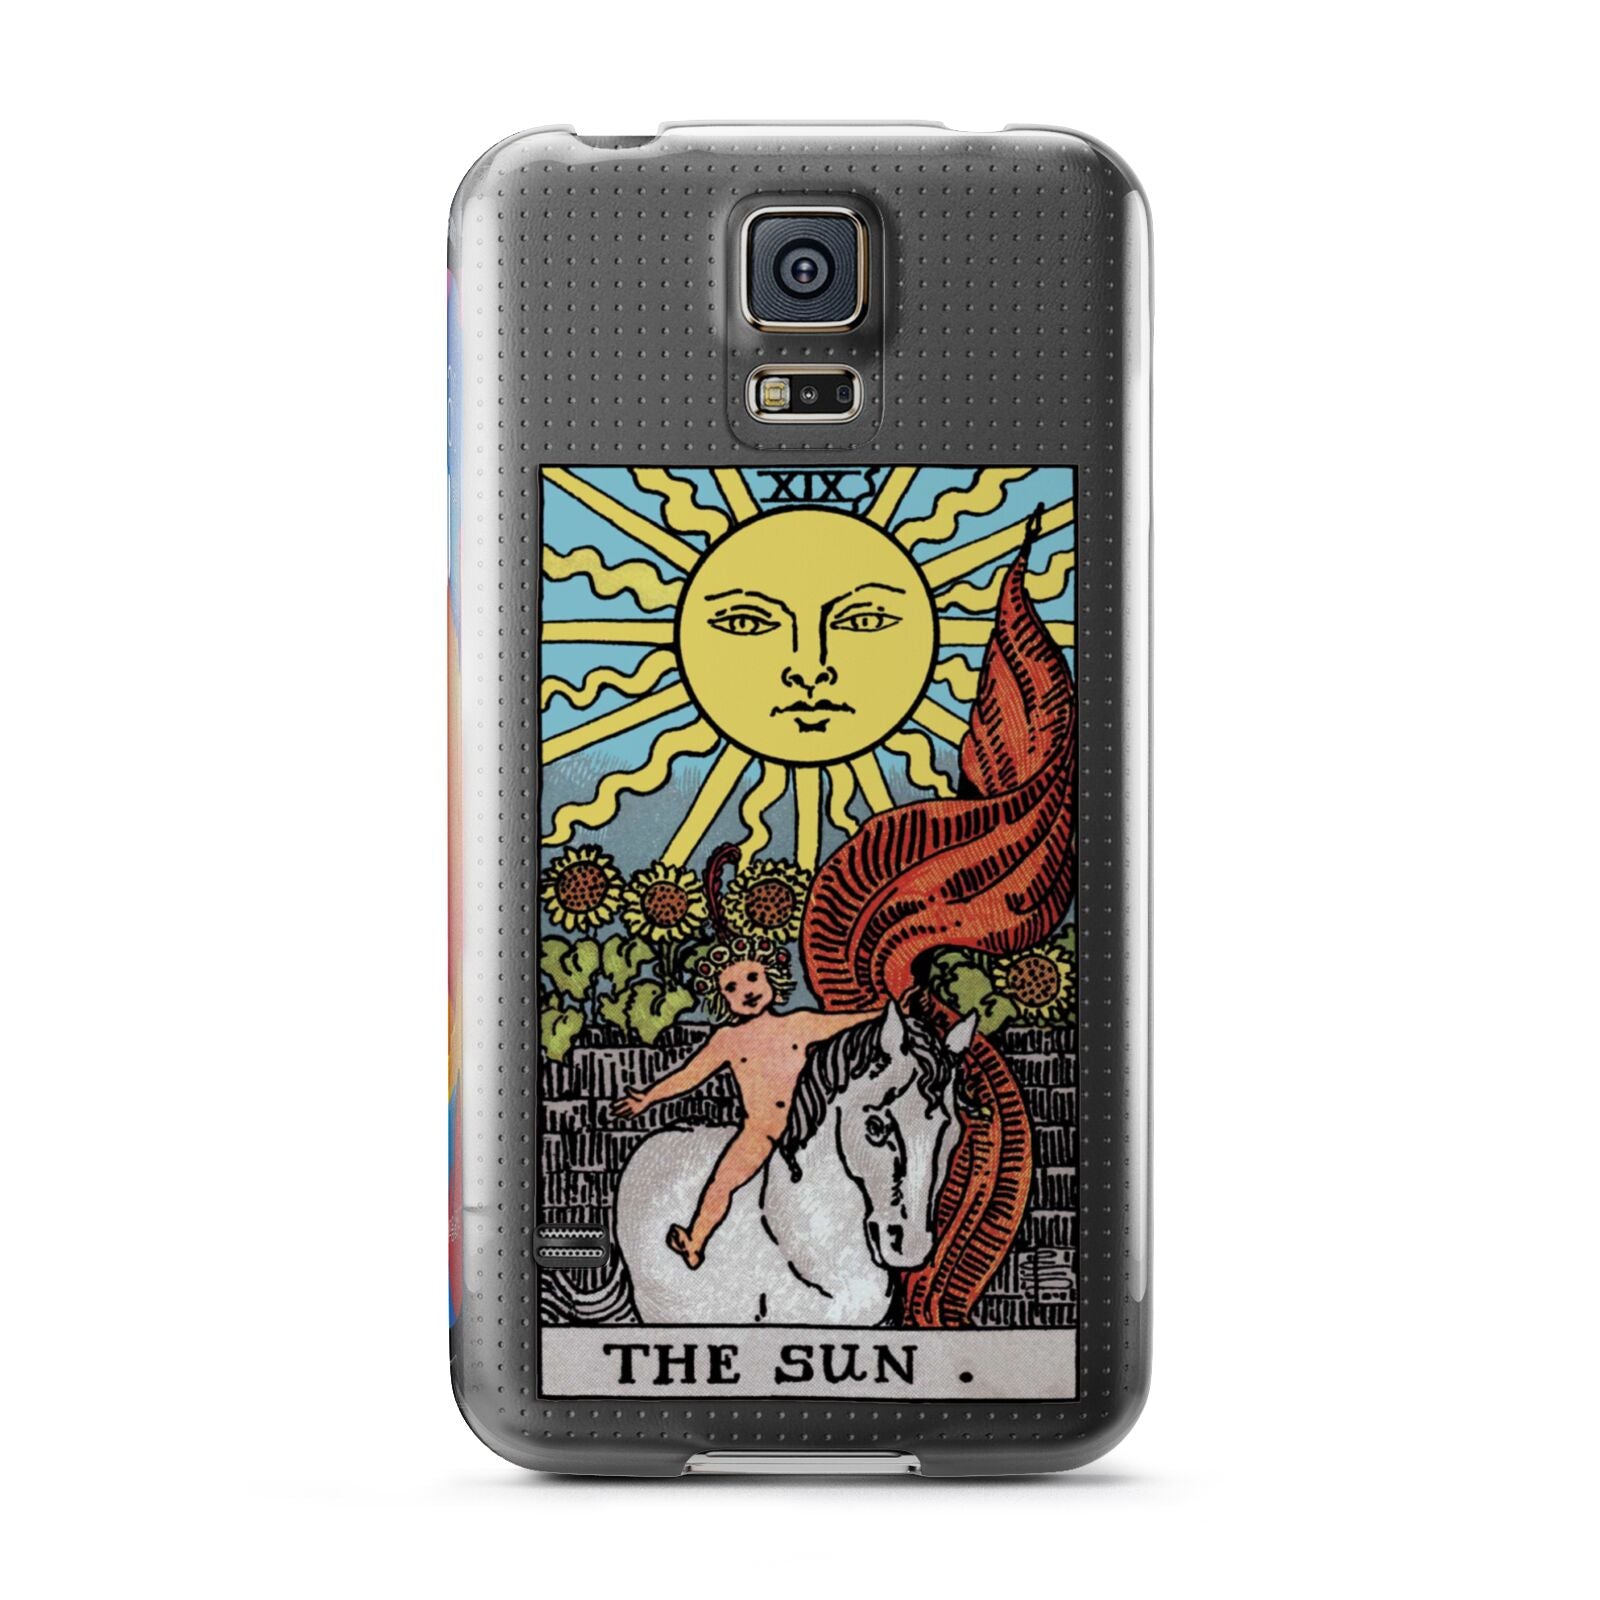 The Sun Tarot Card Samsung Galaxy S5 Case